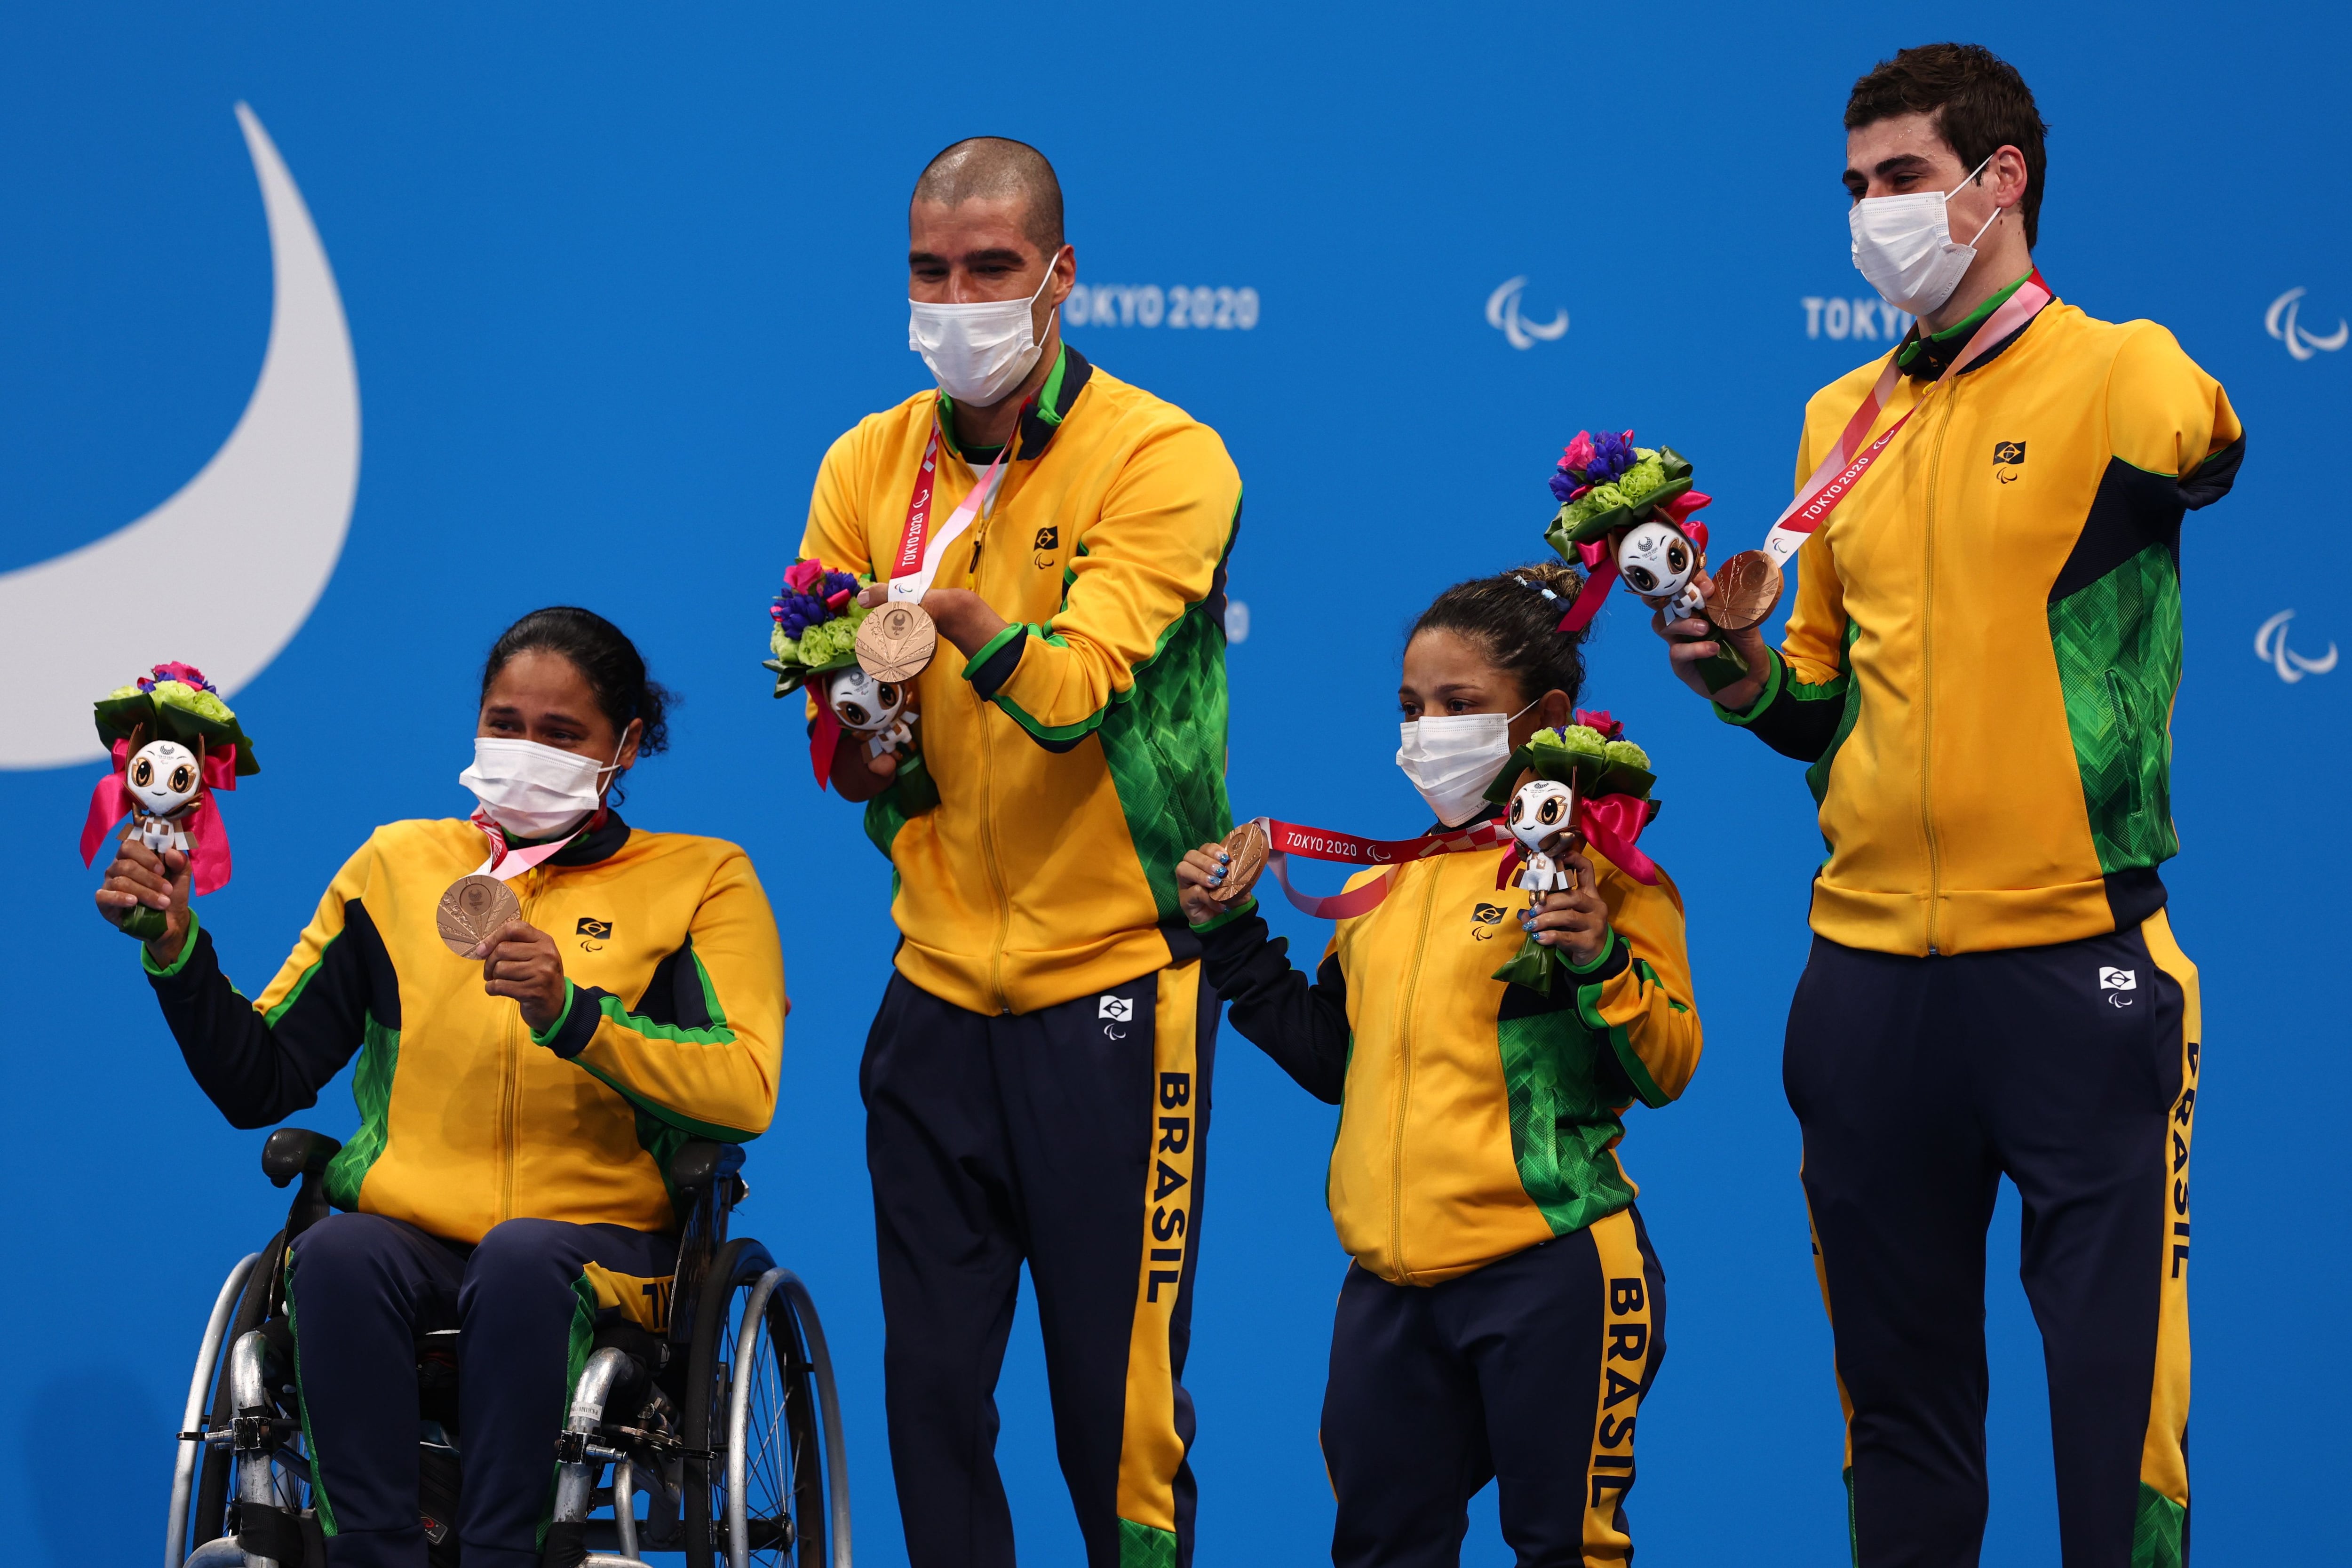 Patrícia, Daniel, Joana e Talisson no pódio com a medalha de bronze.